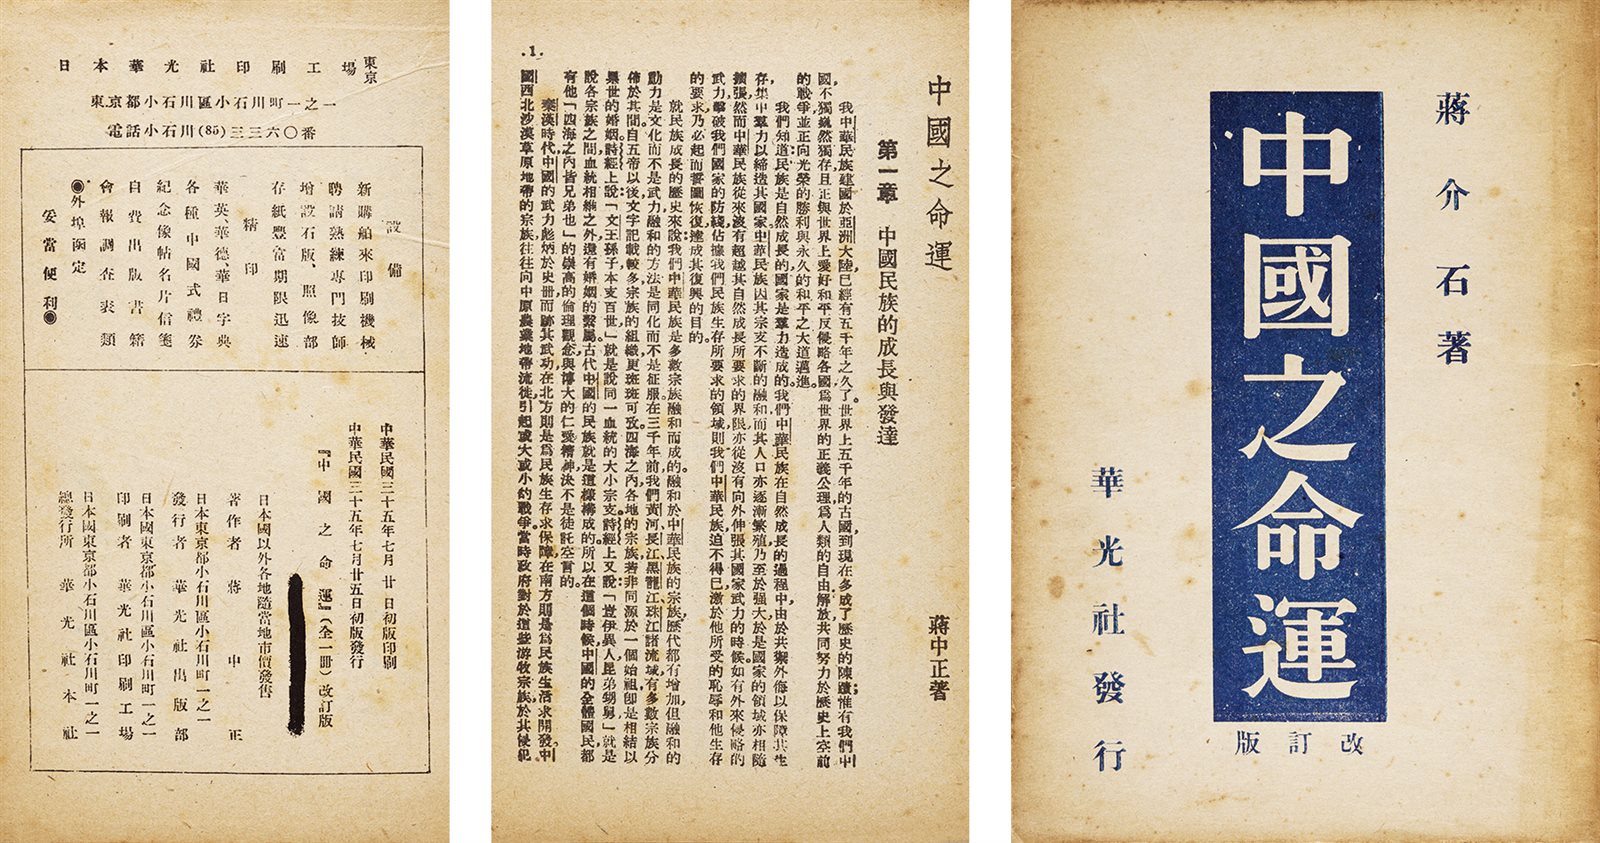 中国之命运 民国三十五年（1946）华光社初版初印